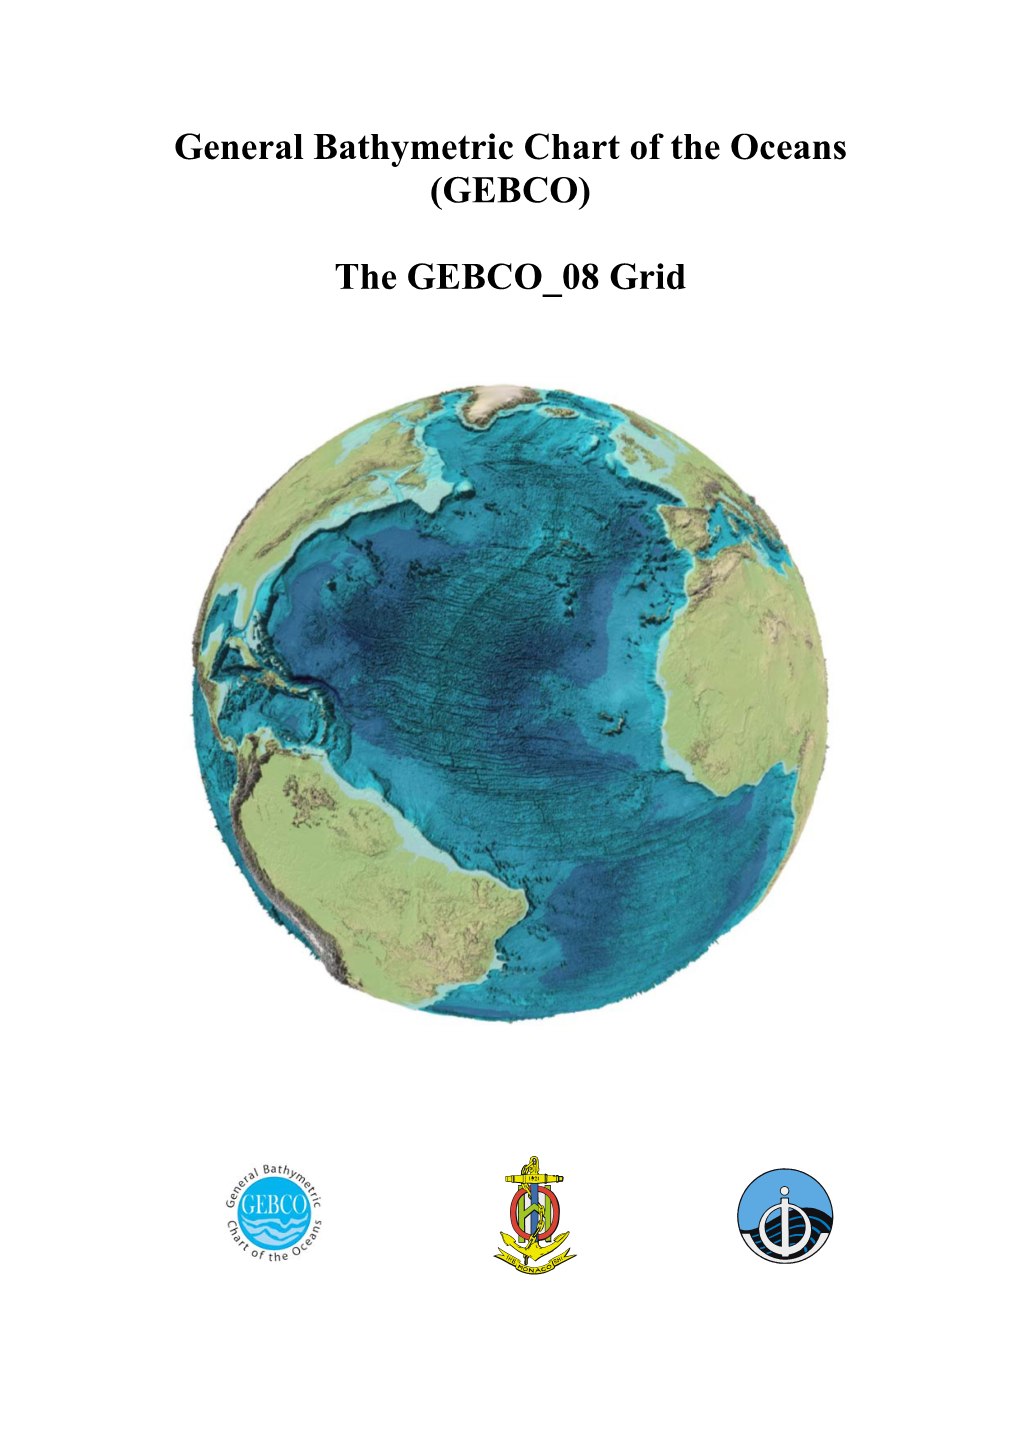 (GEBCO) the GEBCO 08 Grid